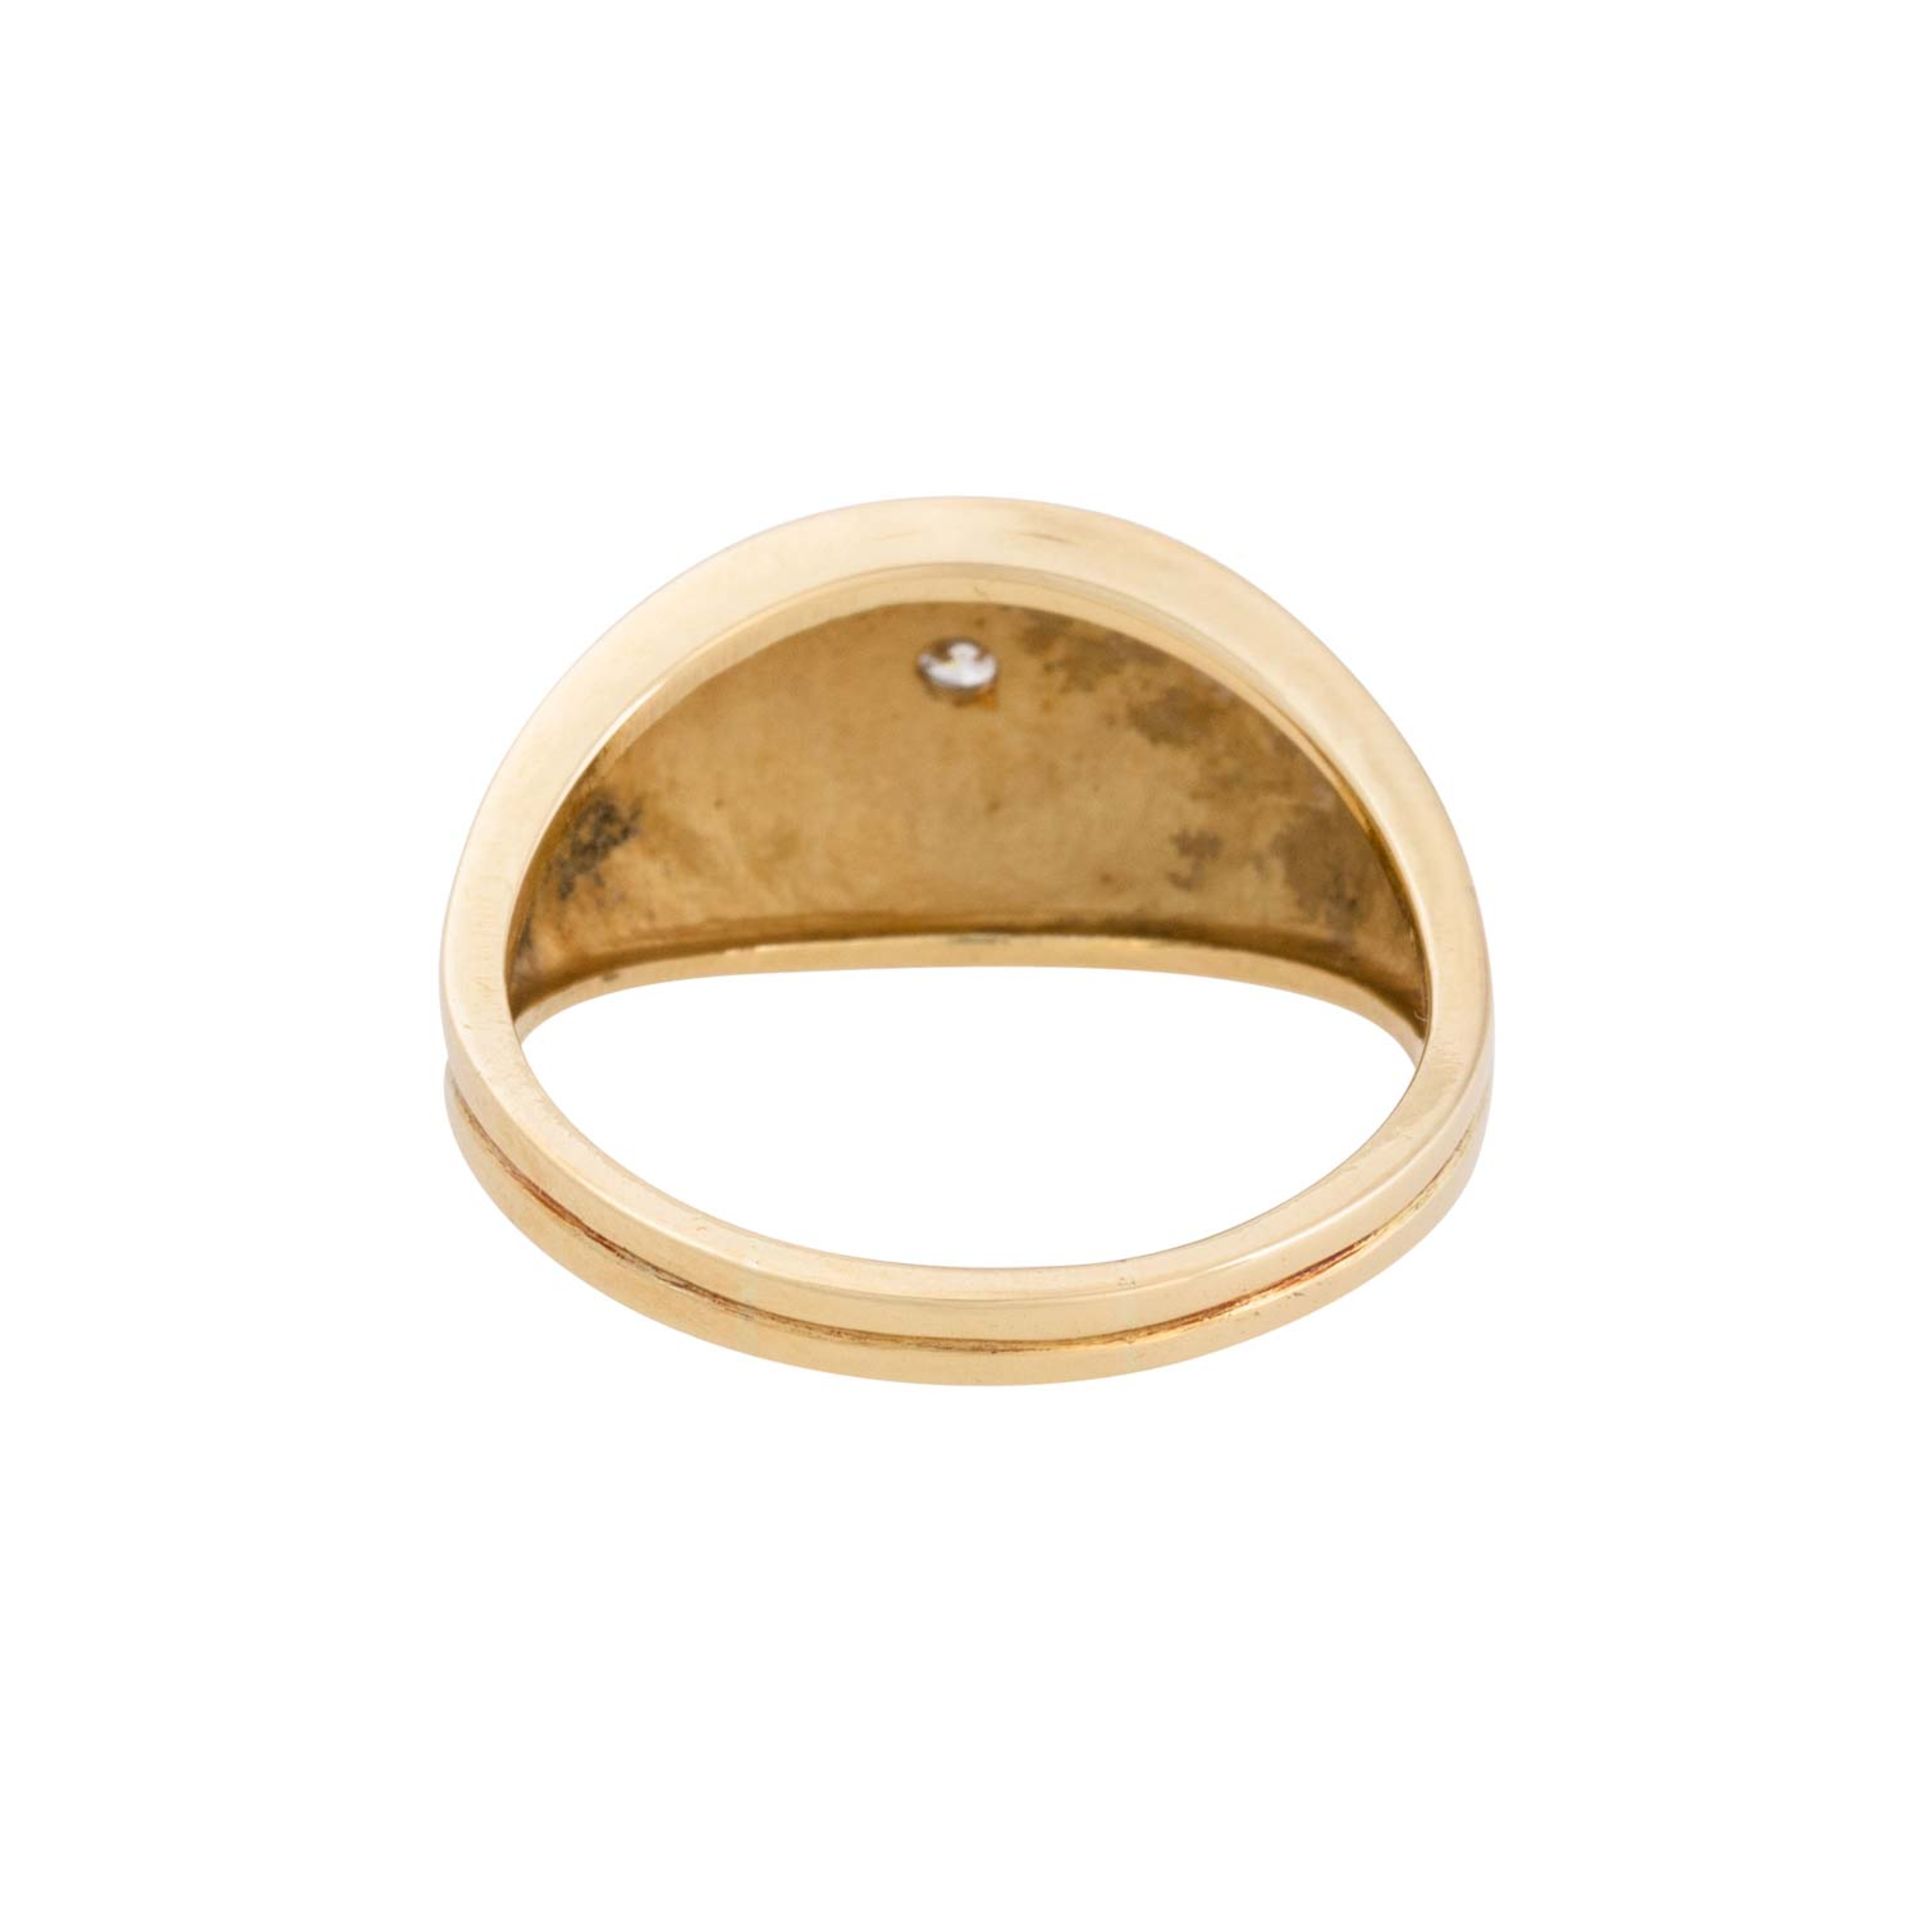 Ring mit Brillant ca. 0,1 ct, umgeben von feiner Granulation, - Bild 3 aus 3